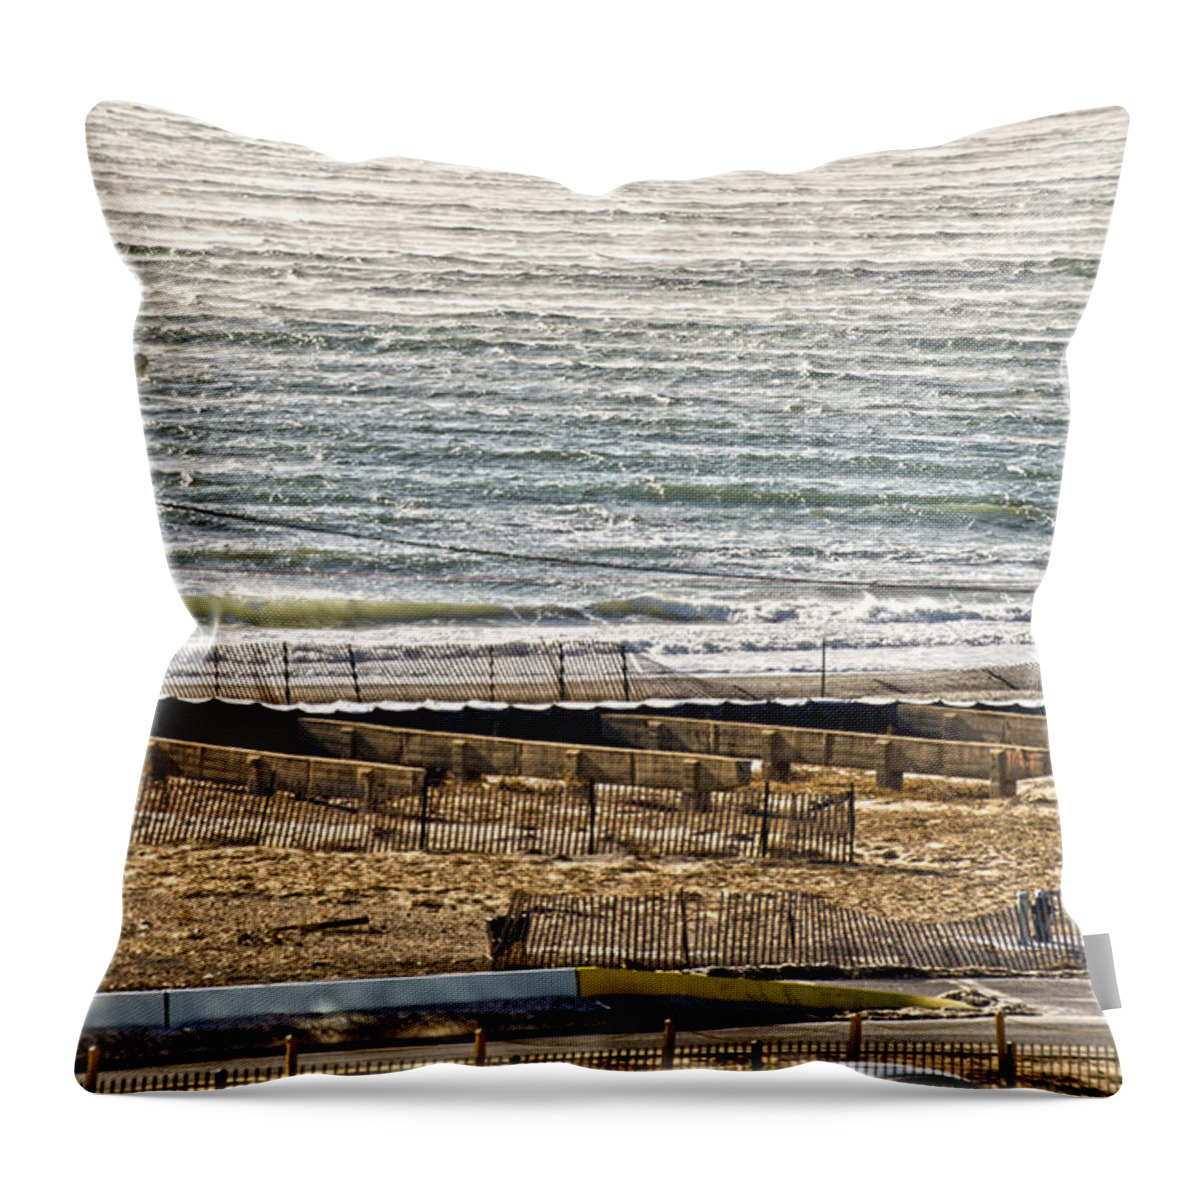 Rockaway Throw Pillow featuring the photograph Rockaway Beach Winter by Maureen E Ritter